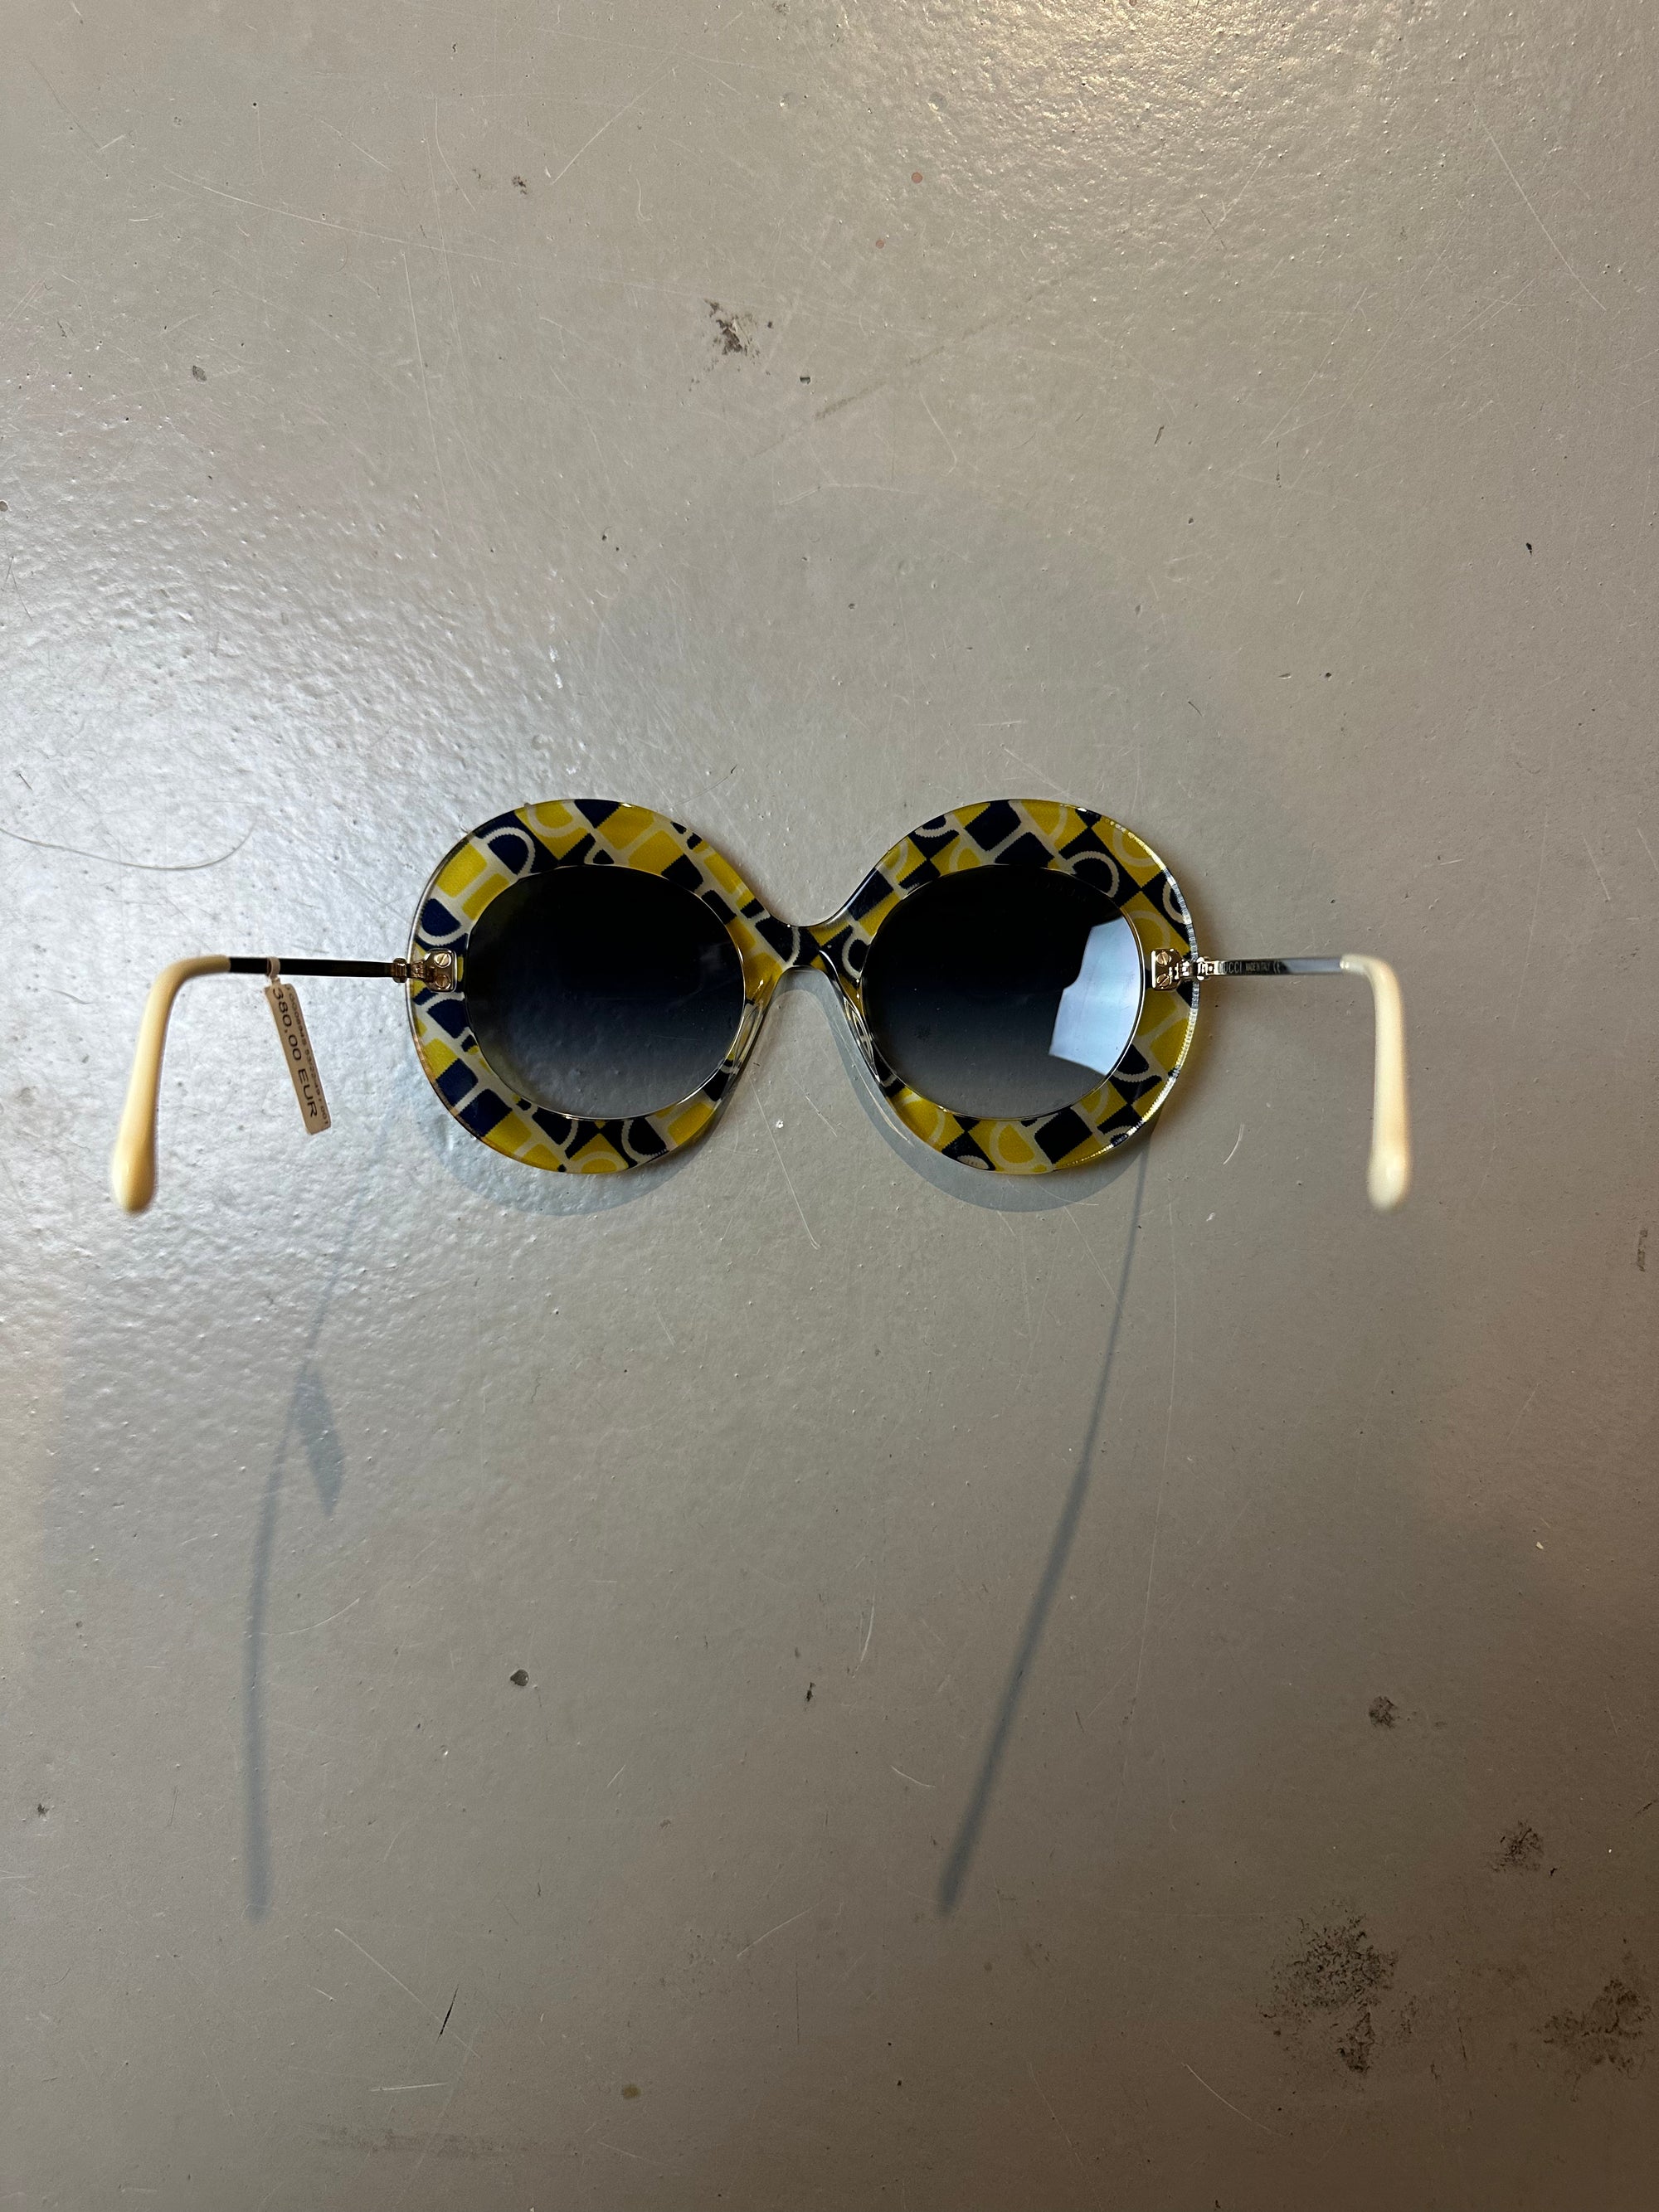 Produktbild der Gucci Sunglasses von oben und hinten.